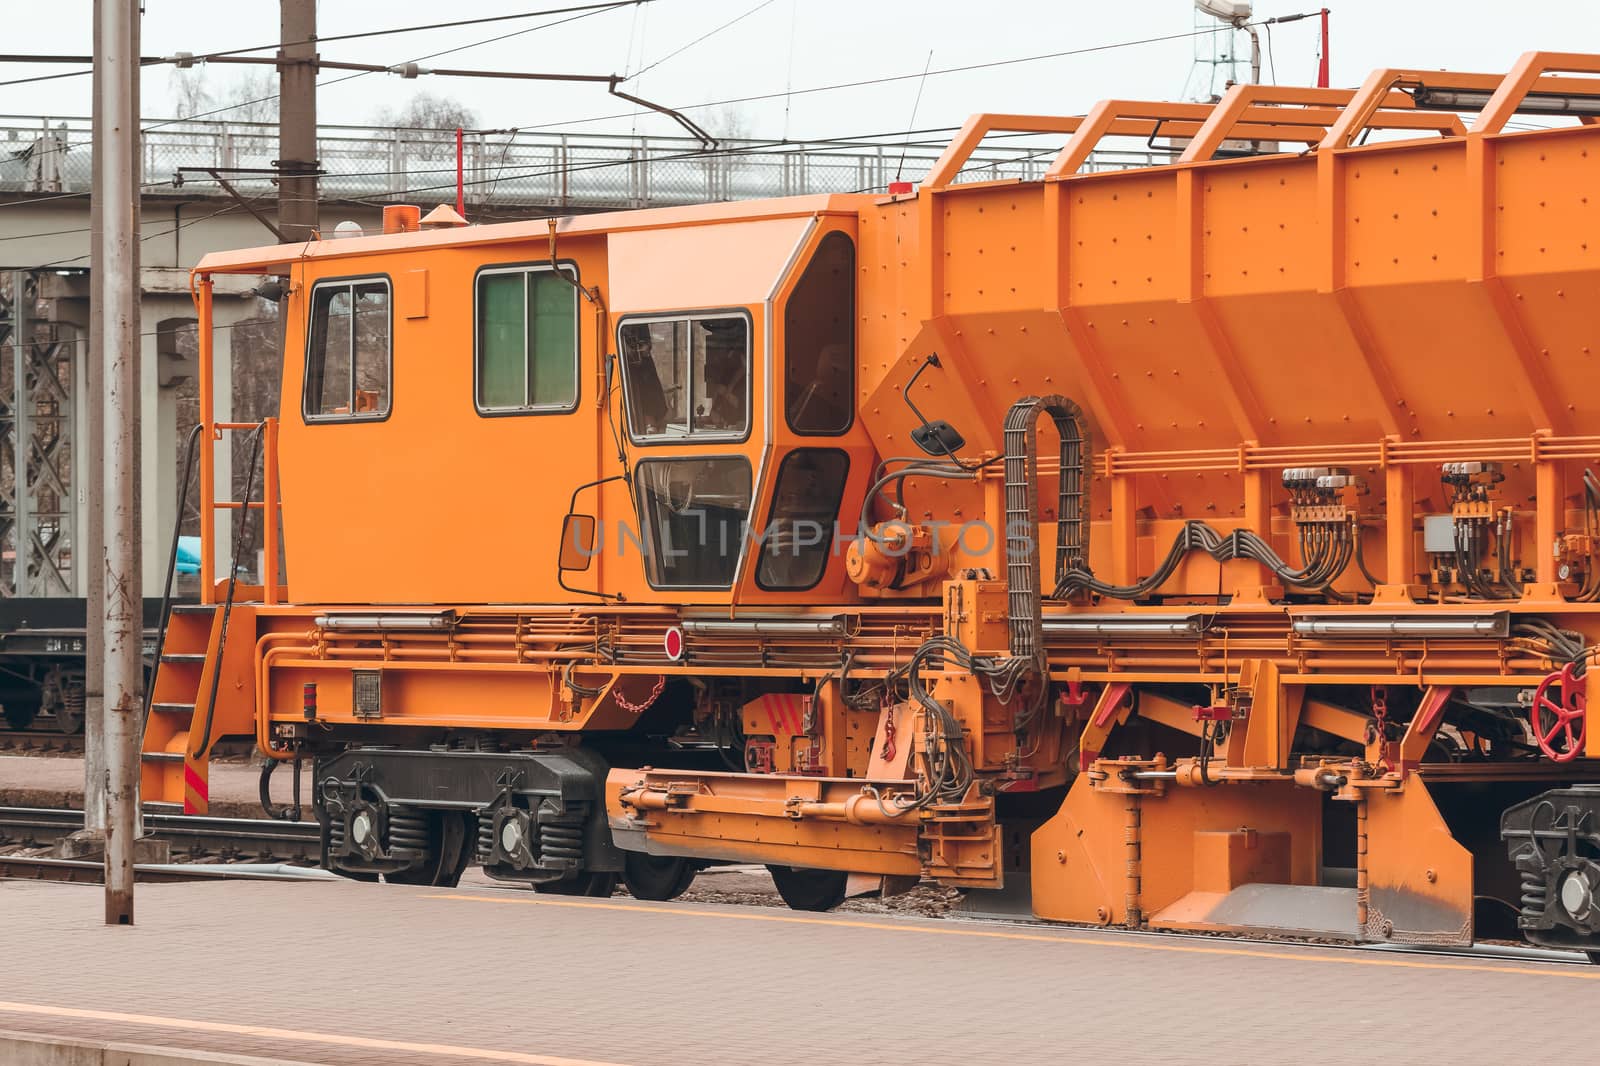 Industry repair train by sengnsp